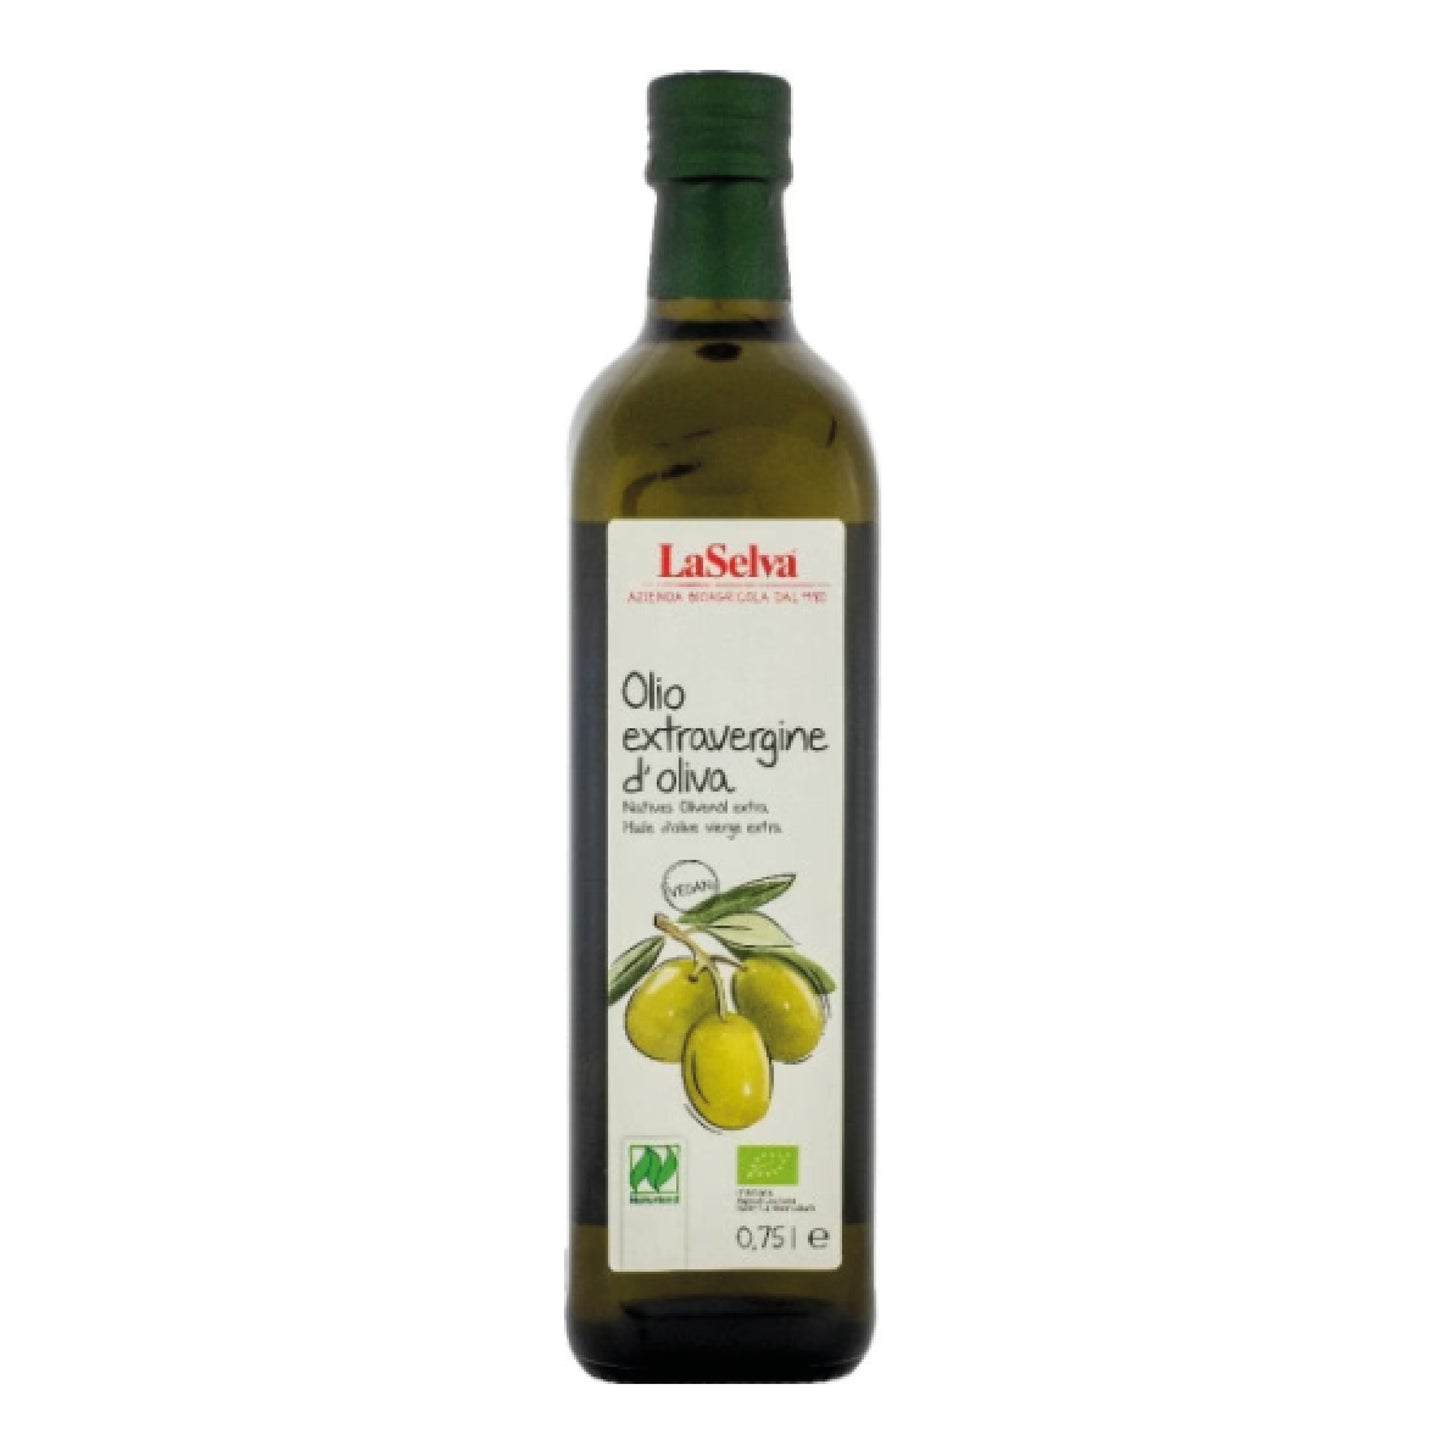 Olio Extravergine di oliva lt 0.75